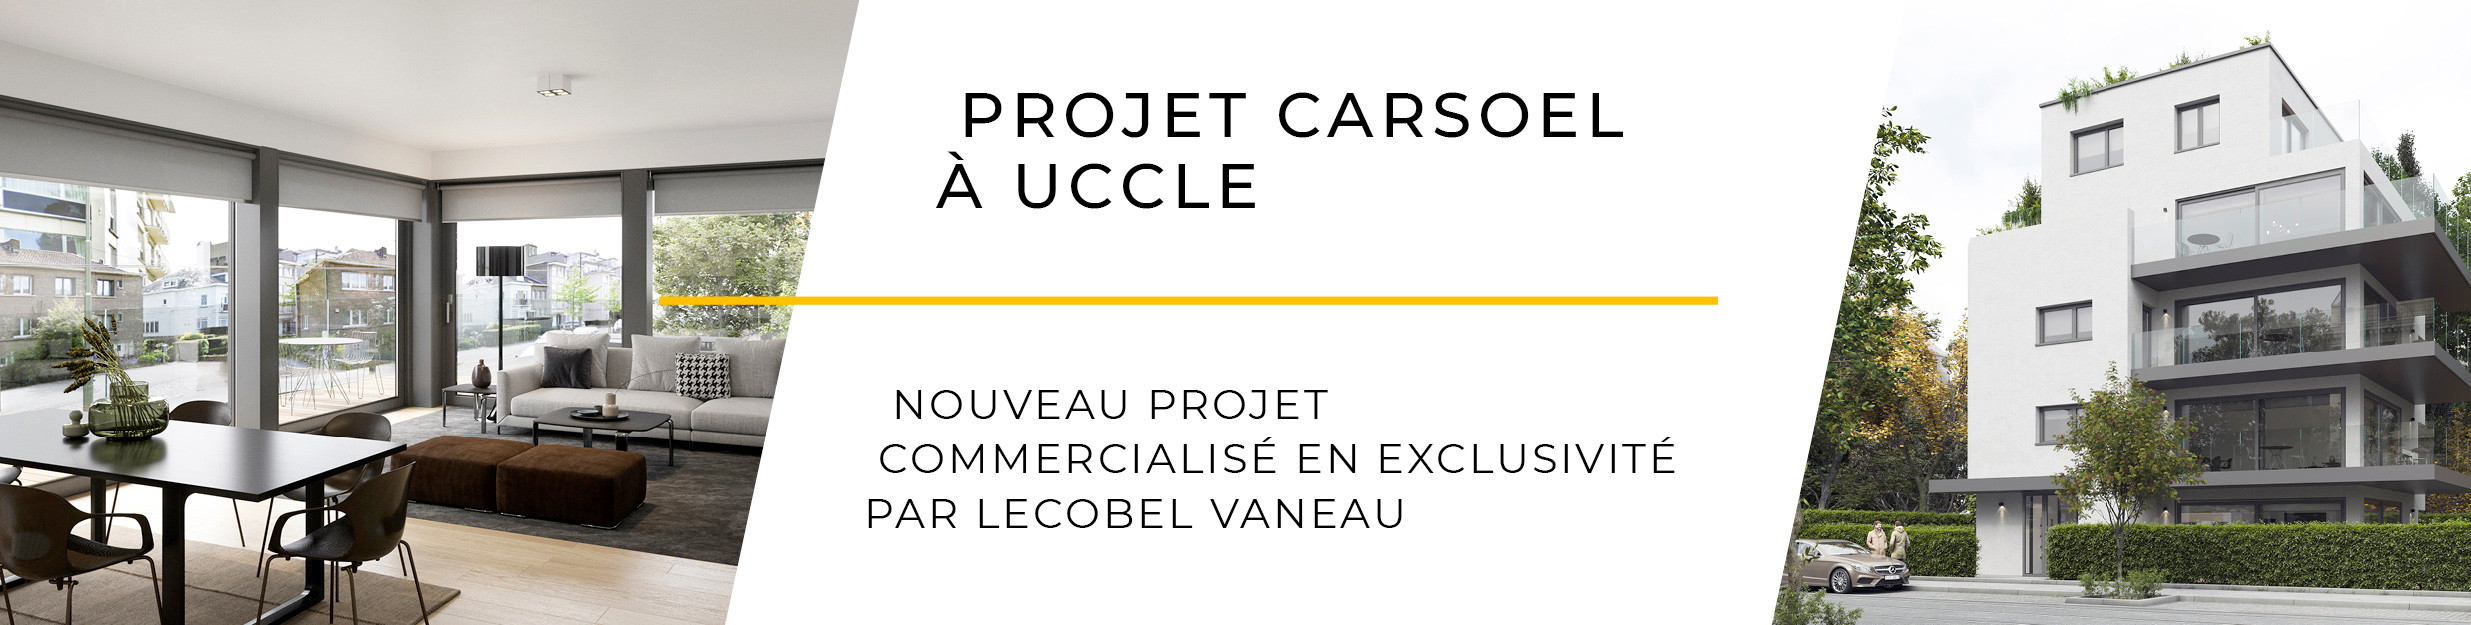 Carsoel nouveau projet immo